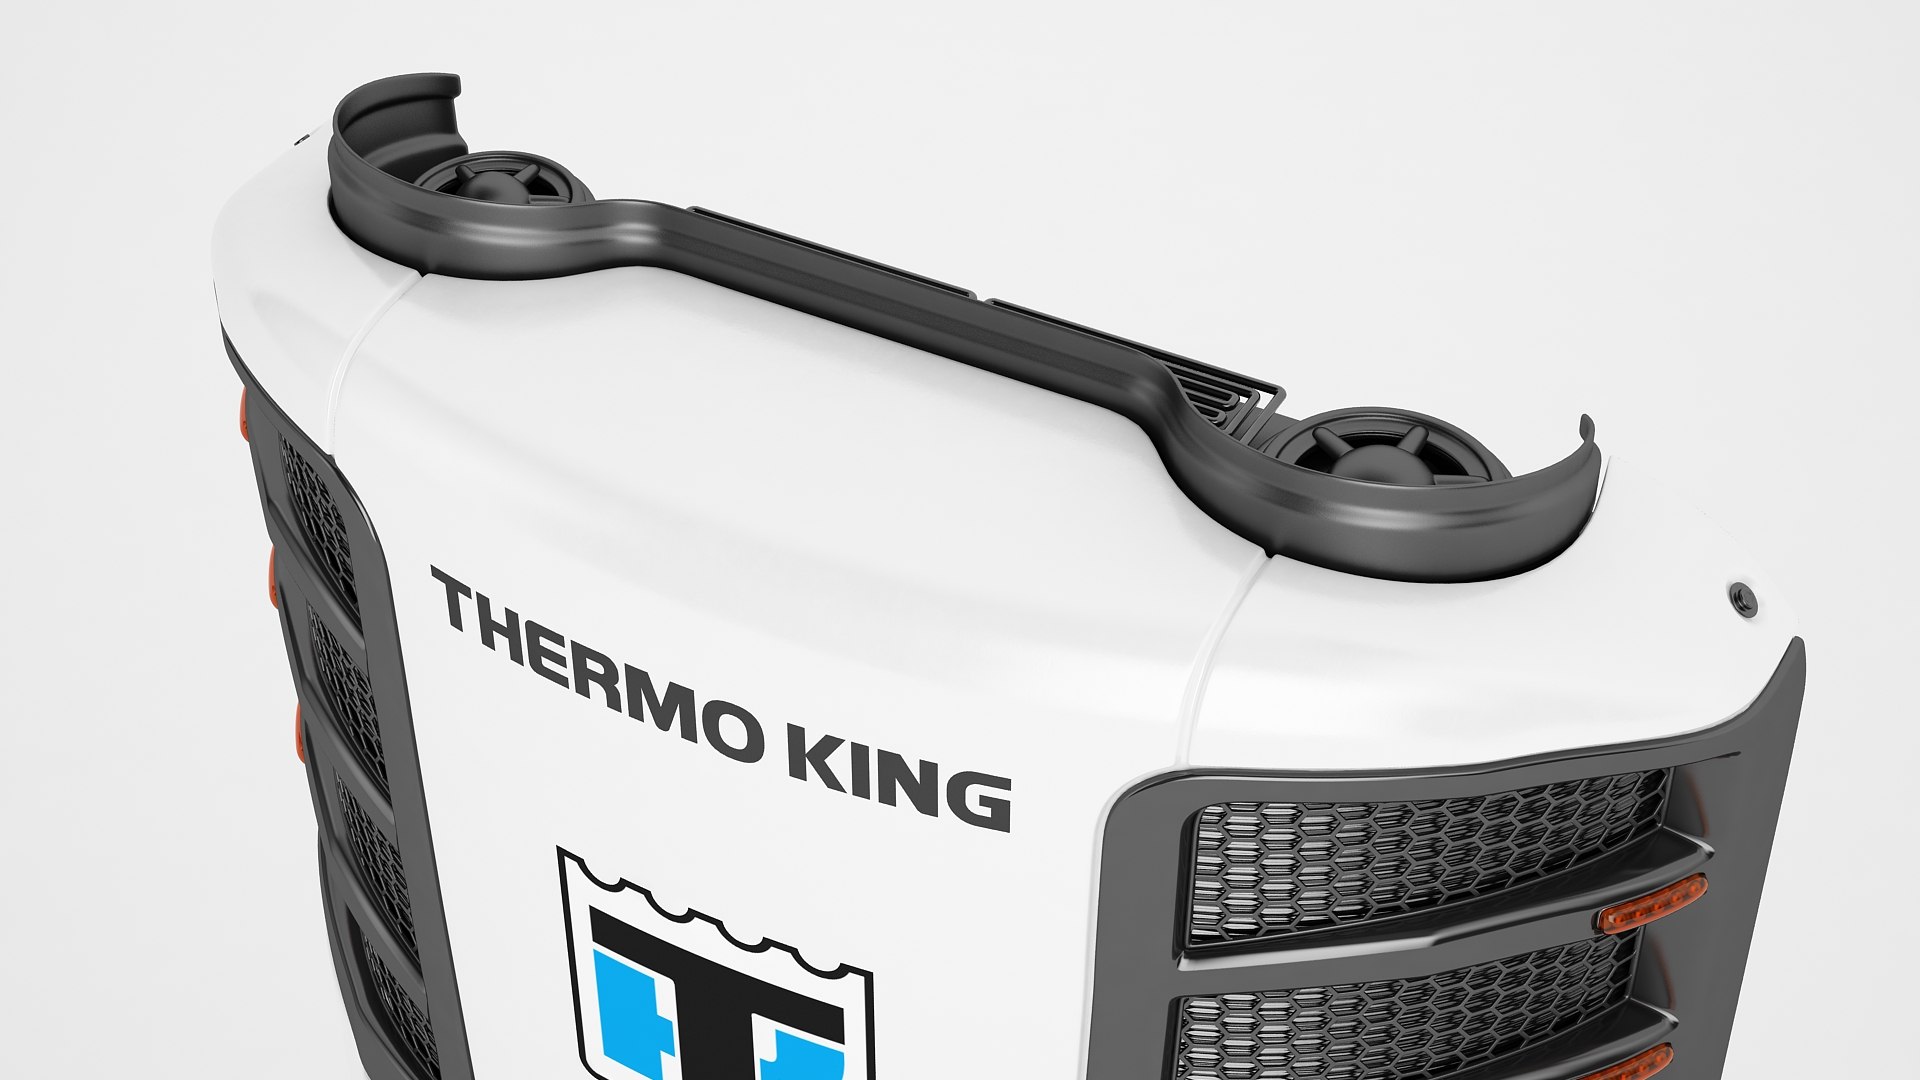 Thermo King - 3D model by vejar.andres.l (@vejar.andres.l) [7c0af4a]